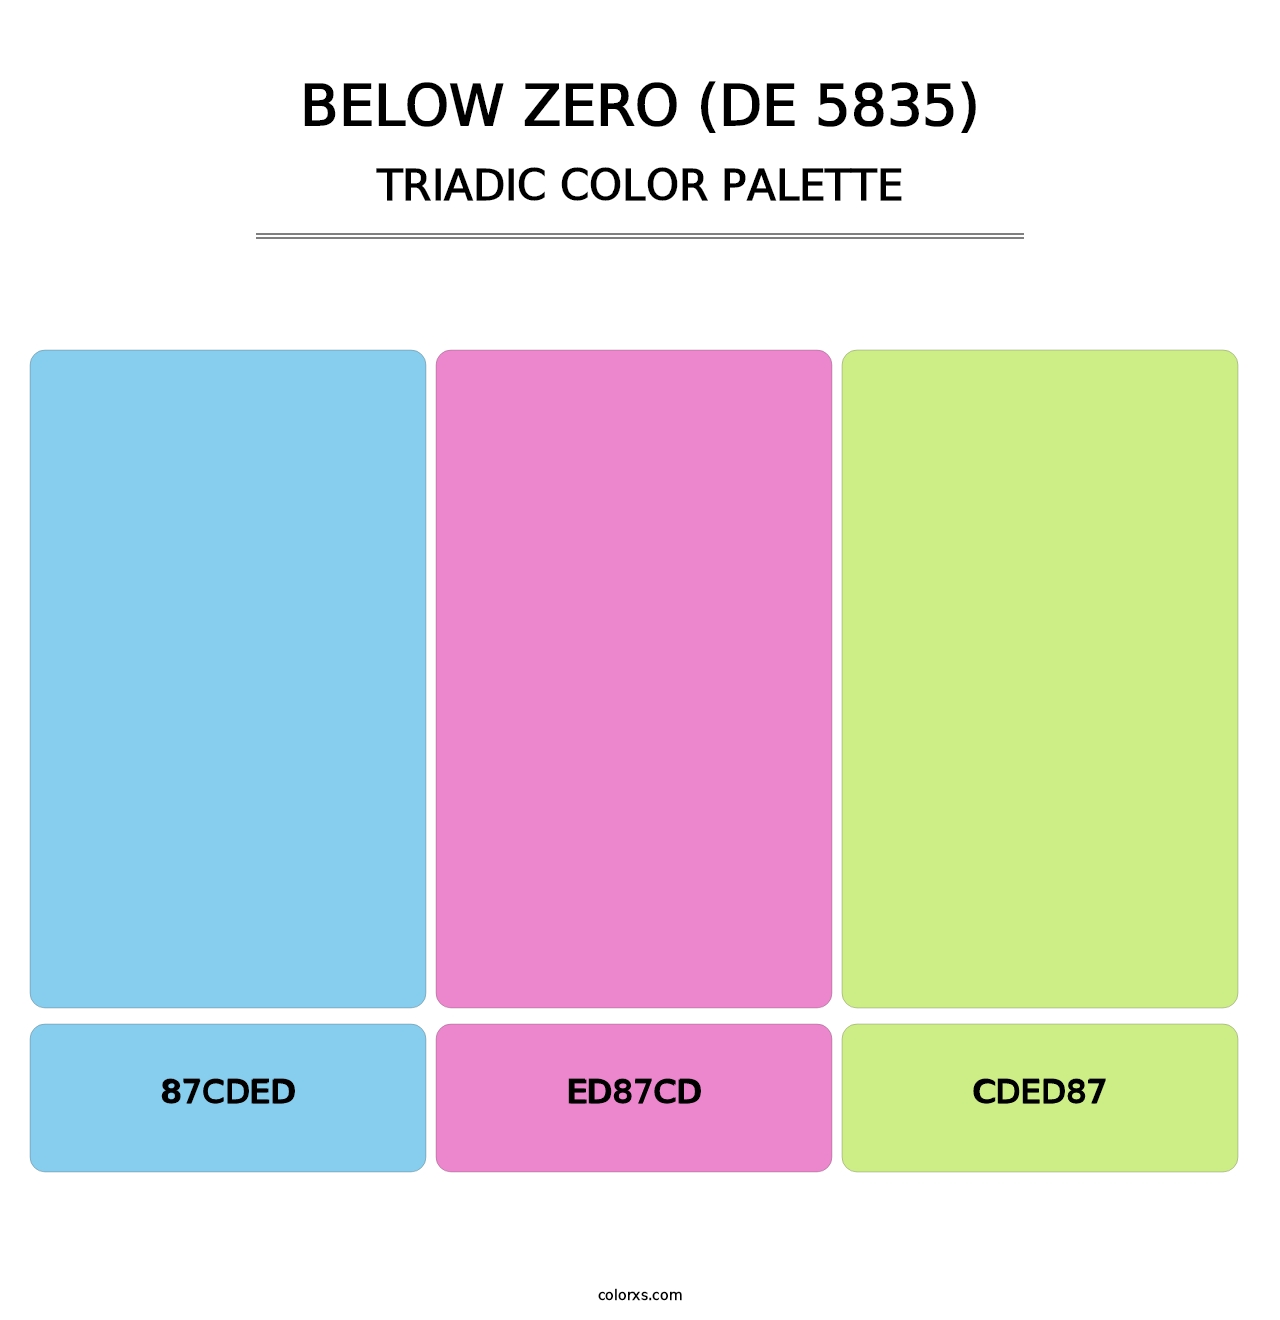 Below Zero (DE 5835) - Triadic Color Palette